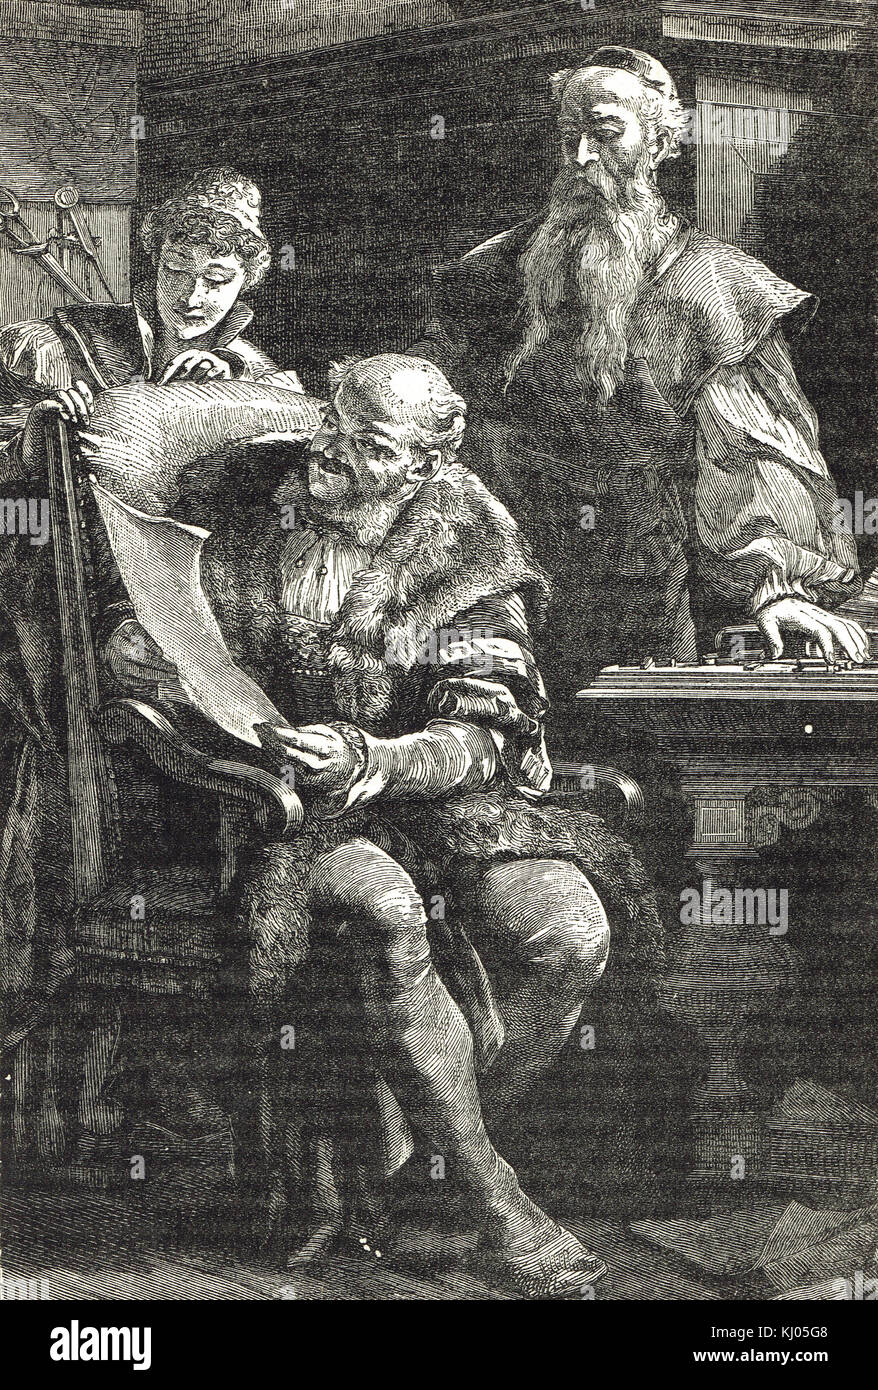 Gutenberg mostrando Fust (también escanda Faust) el primer libro impreso Foto de stock